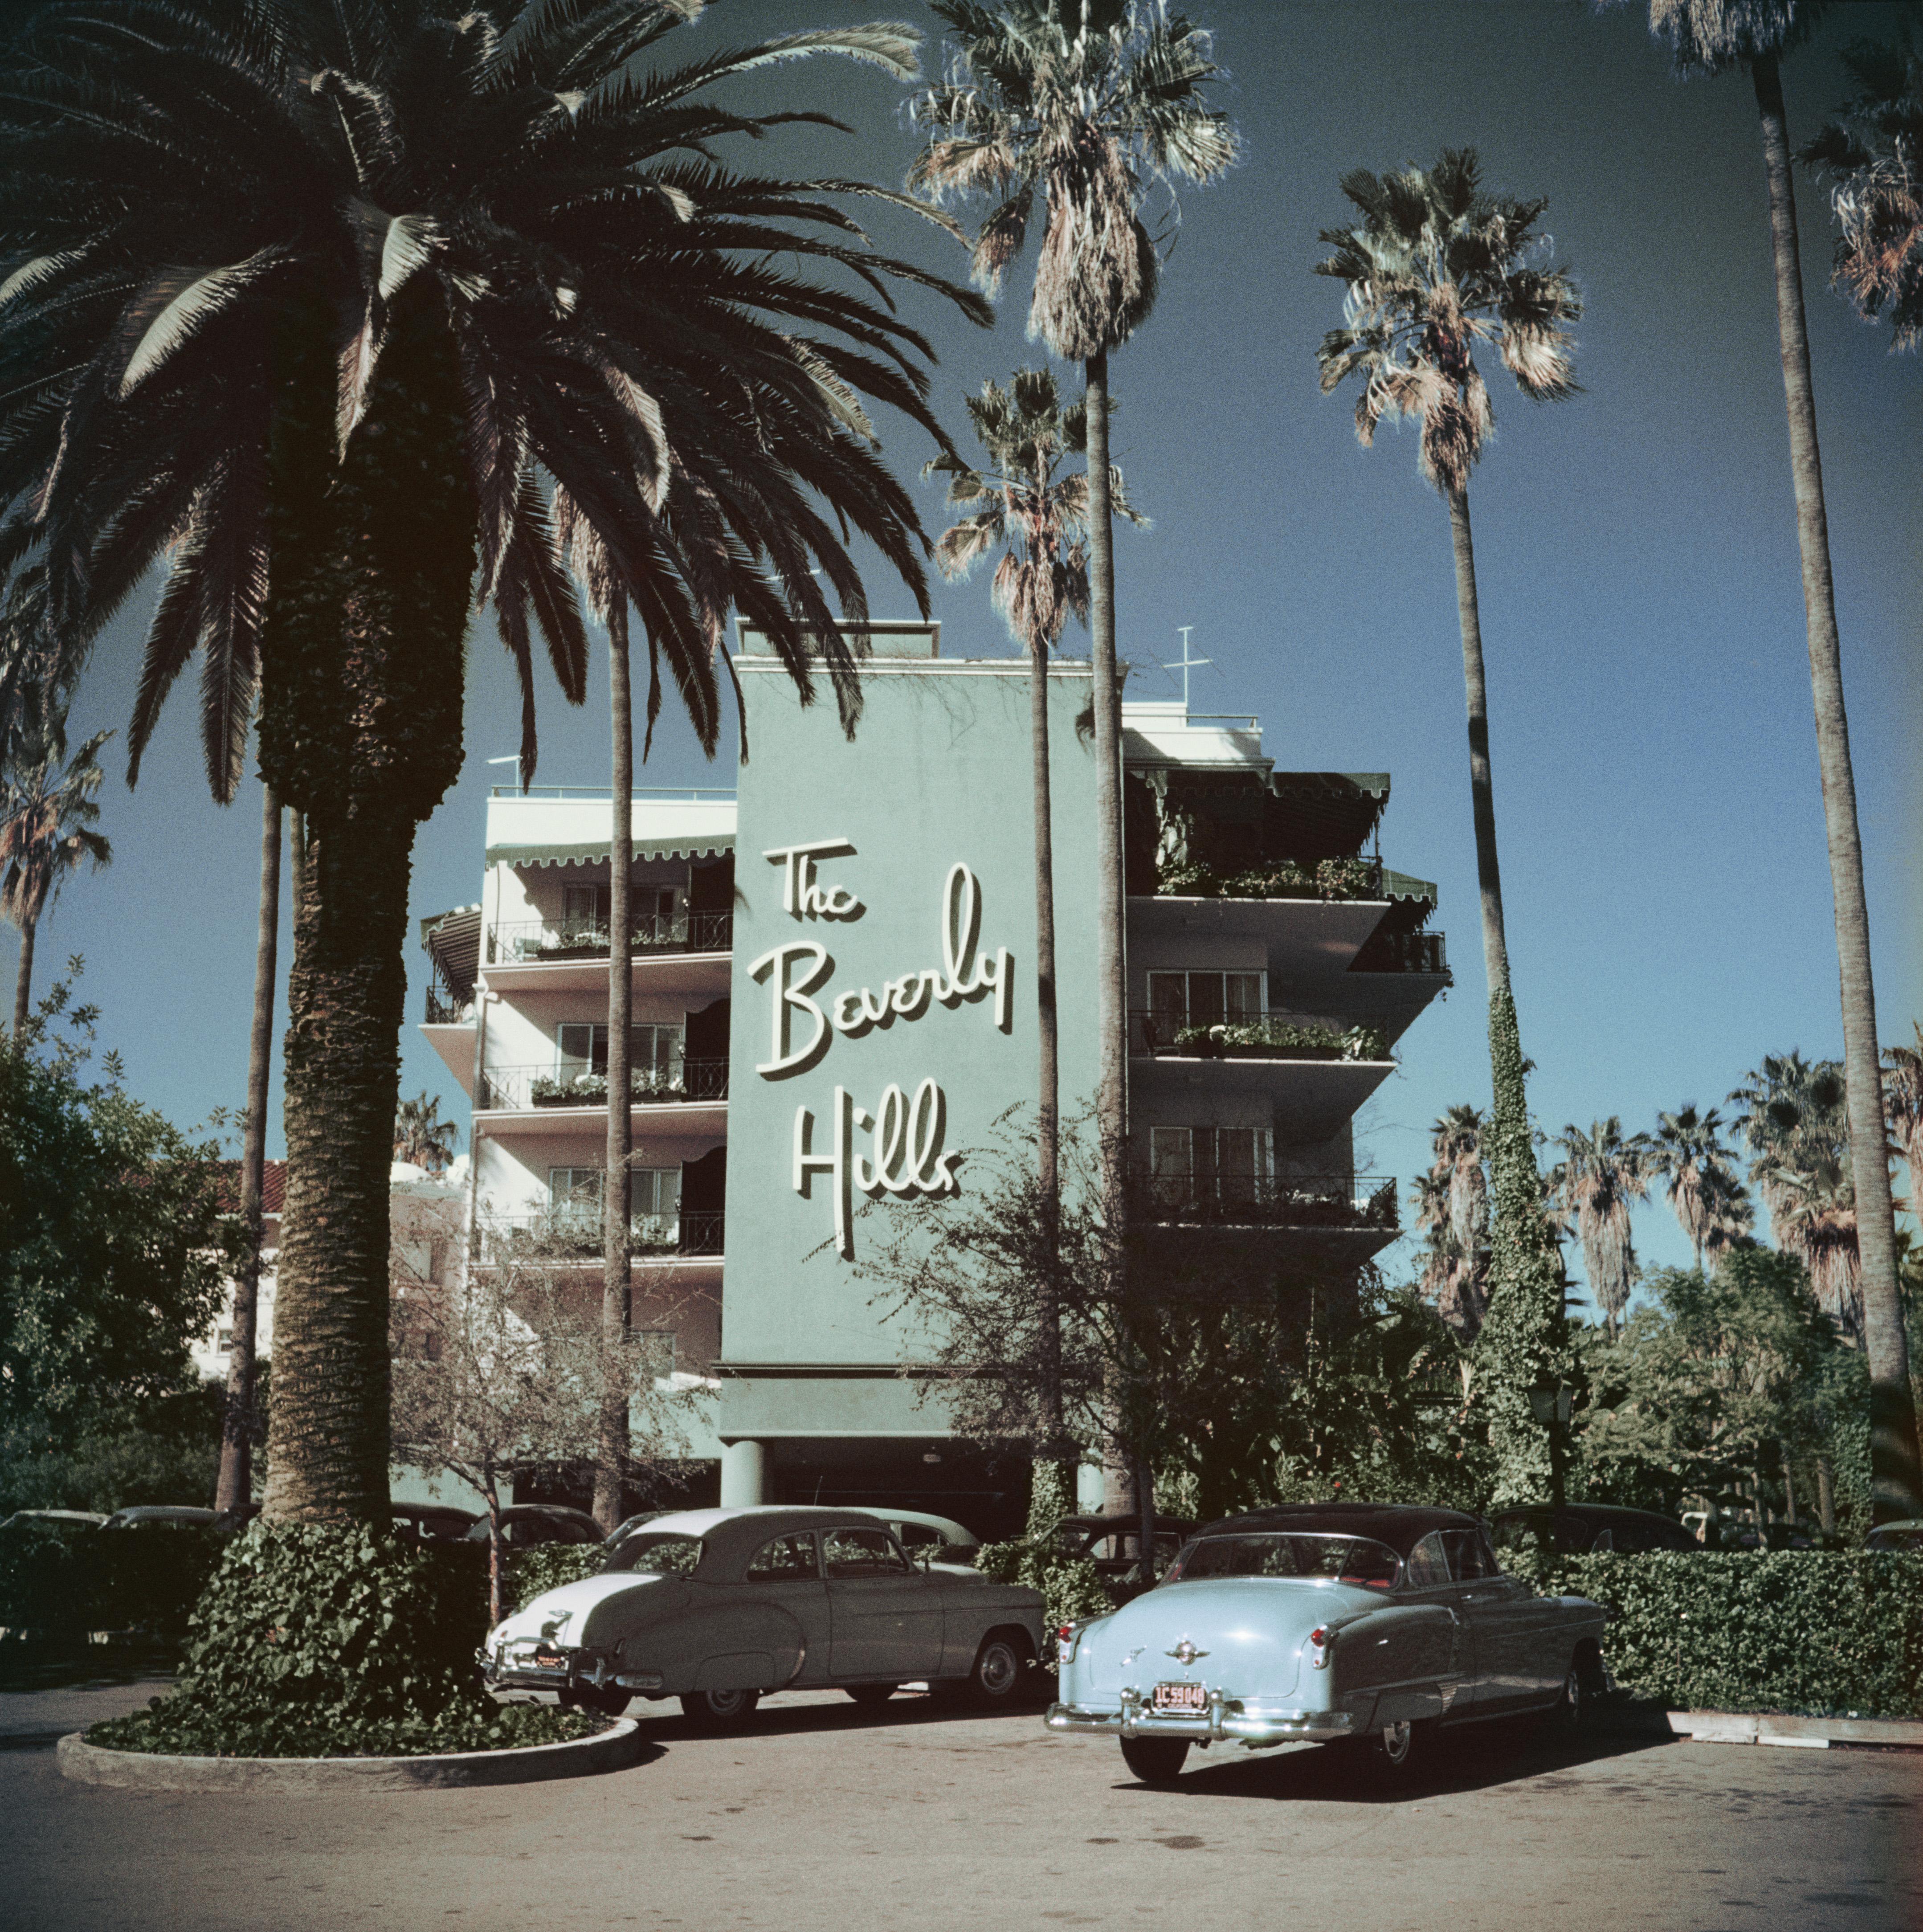 beverly Hills Hotel' 1957 Slim Aarons Limitierte Auflage Nachlassgestempelter Druck

Vor dem Beverly Hills Hotel am Sunset Boulevard in Kalifornien geparkte Autos, 1957. (Foto: Slim Aarons)

C Drucken
Hergestellt aus der Originalfolie
Mitgeliefertes